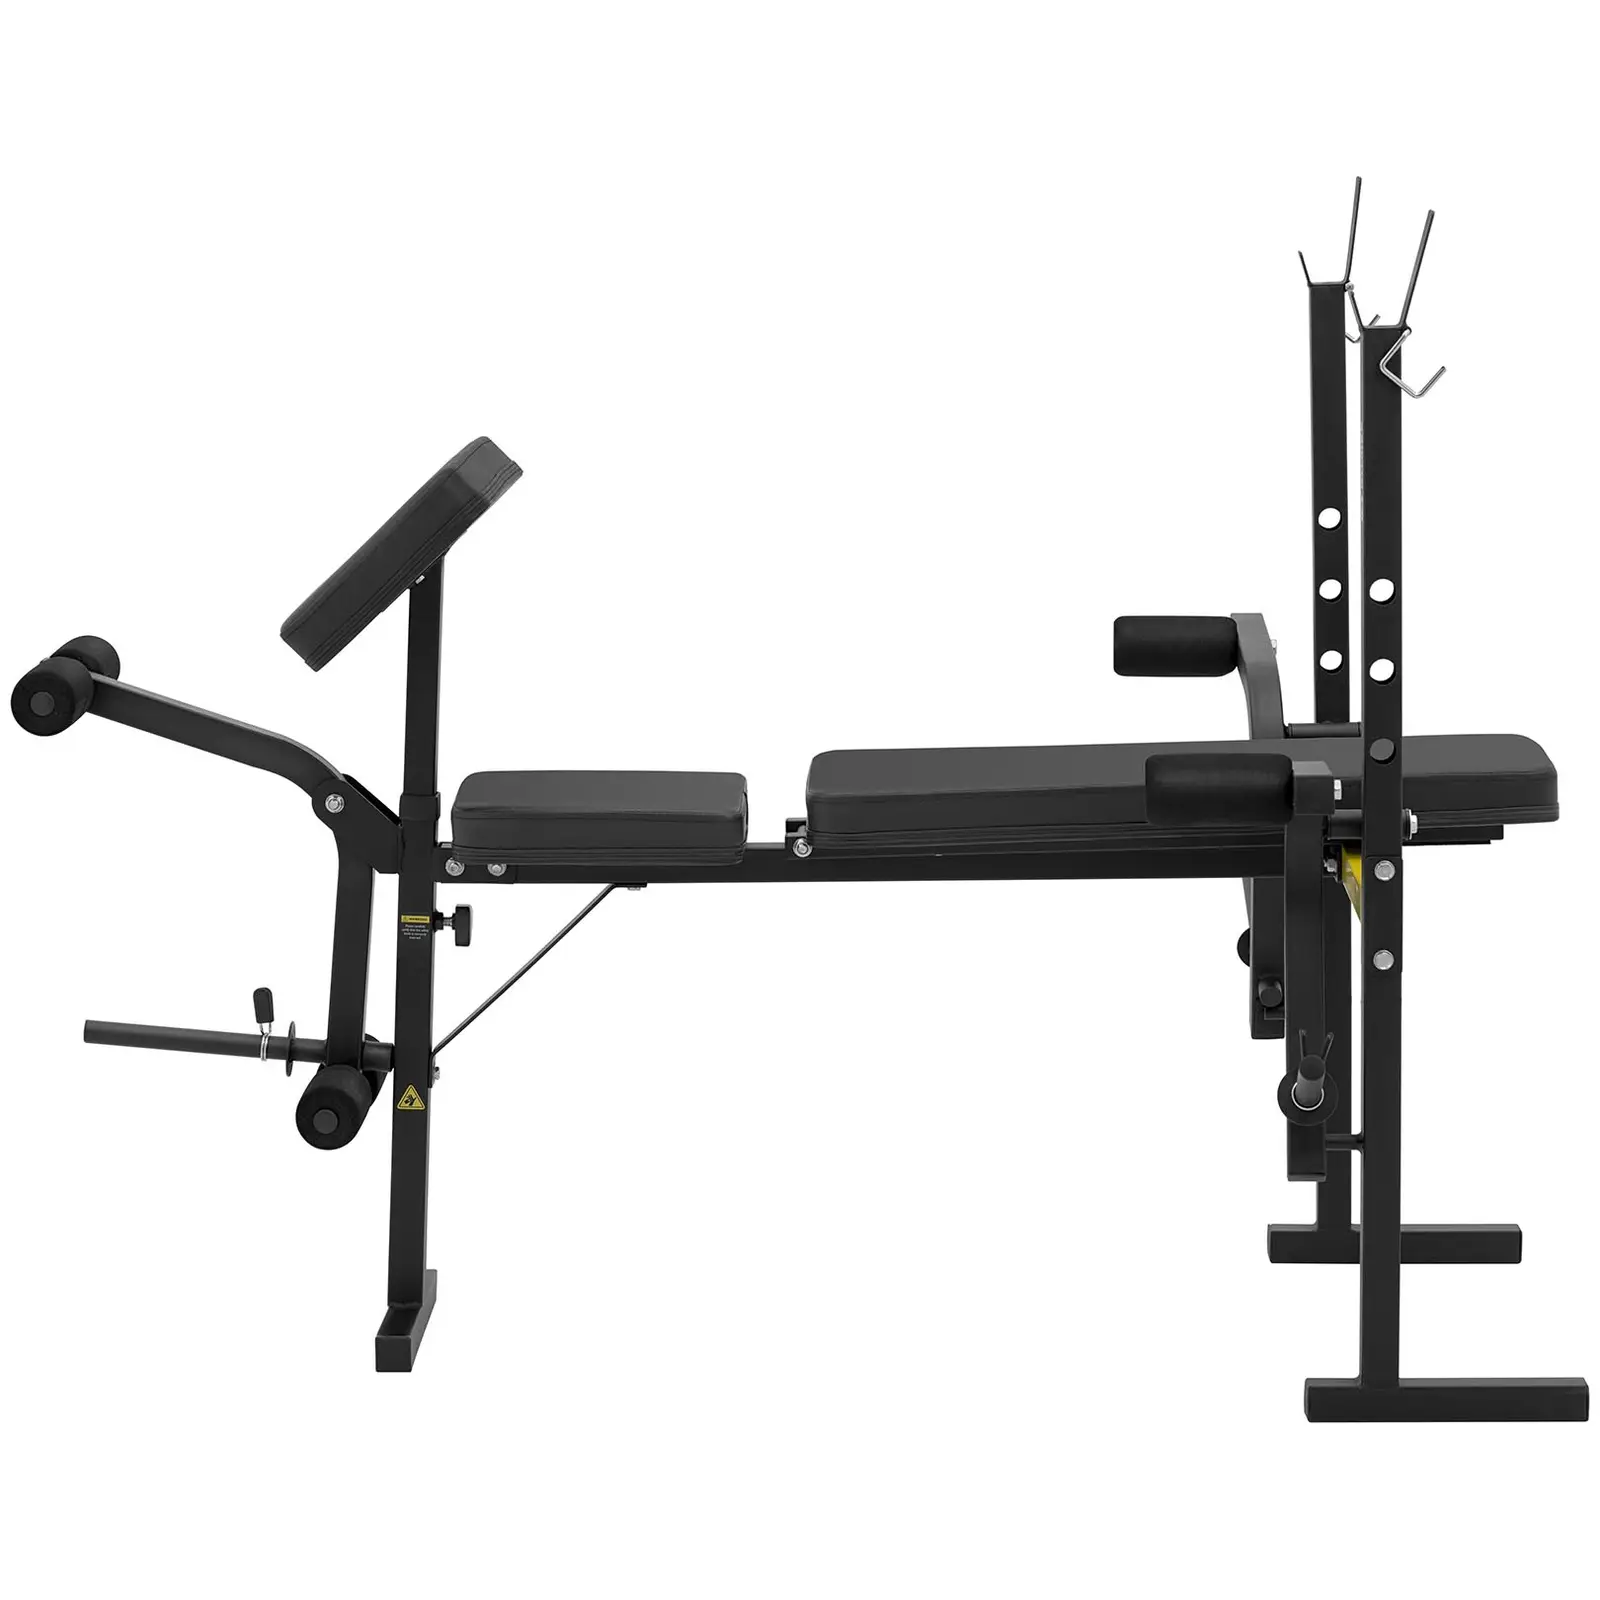 Wielofunkcyjna ławka treningowa - do 100 kg - regulowana